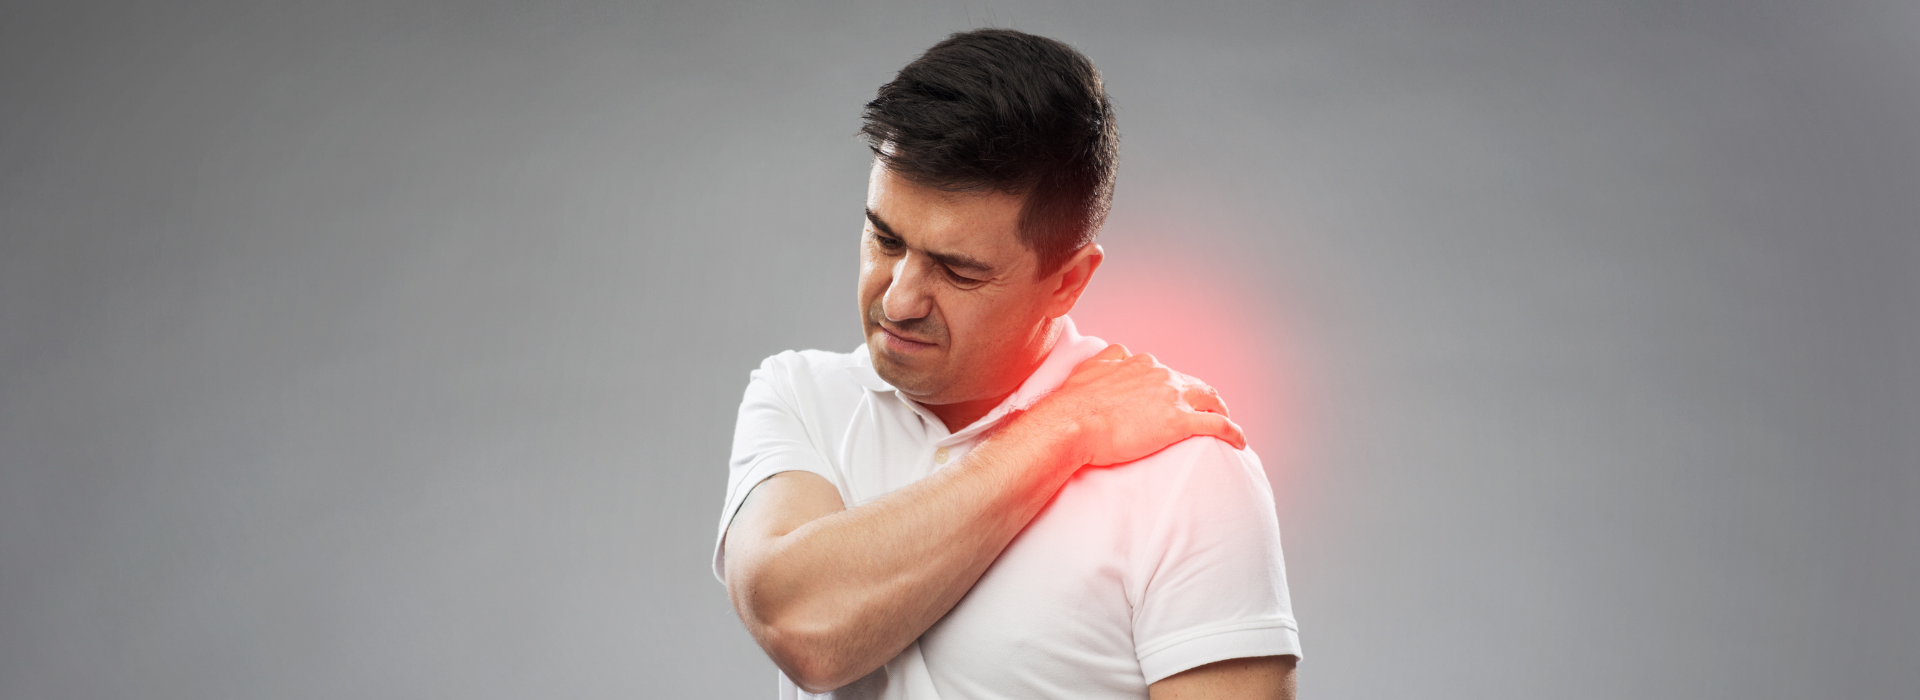 הידעתם? כאבי שכמות וכאבי גב עליון יכולים לנבוע ממגוון גורמים, החל מפציעות שרירים ועד למחלות ניווניות. 